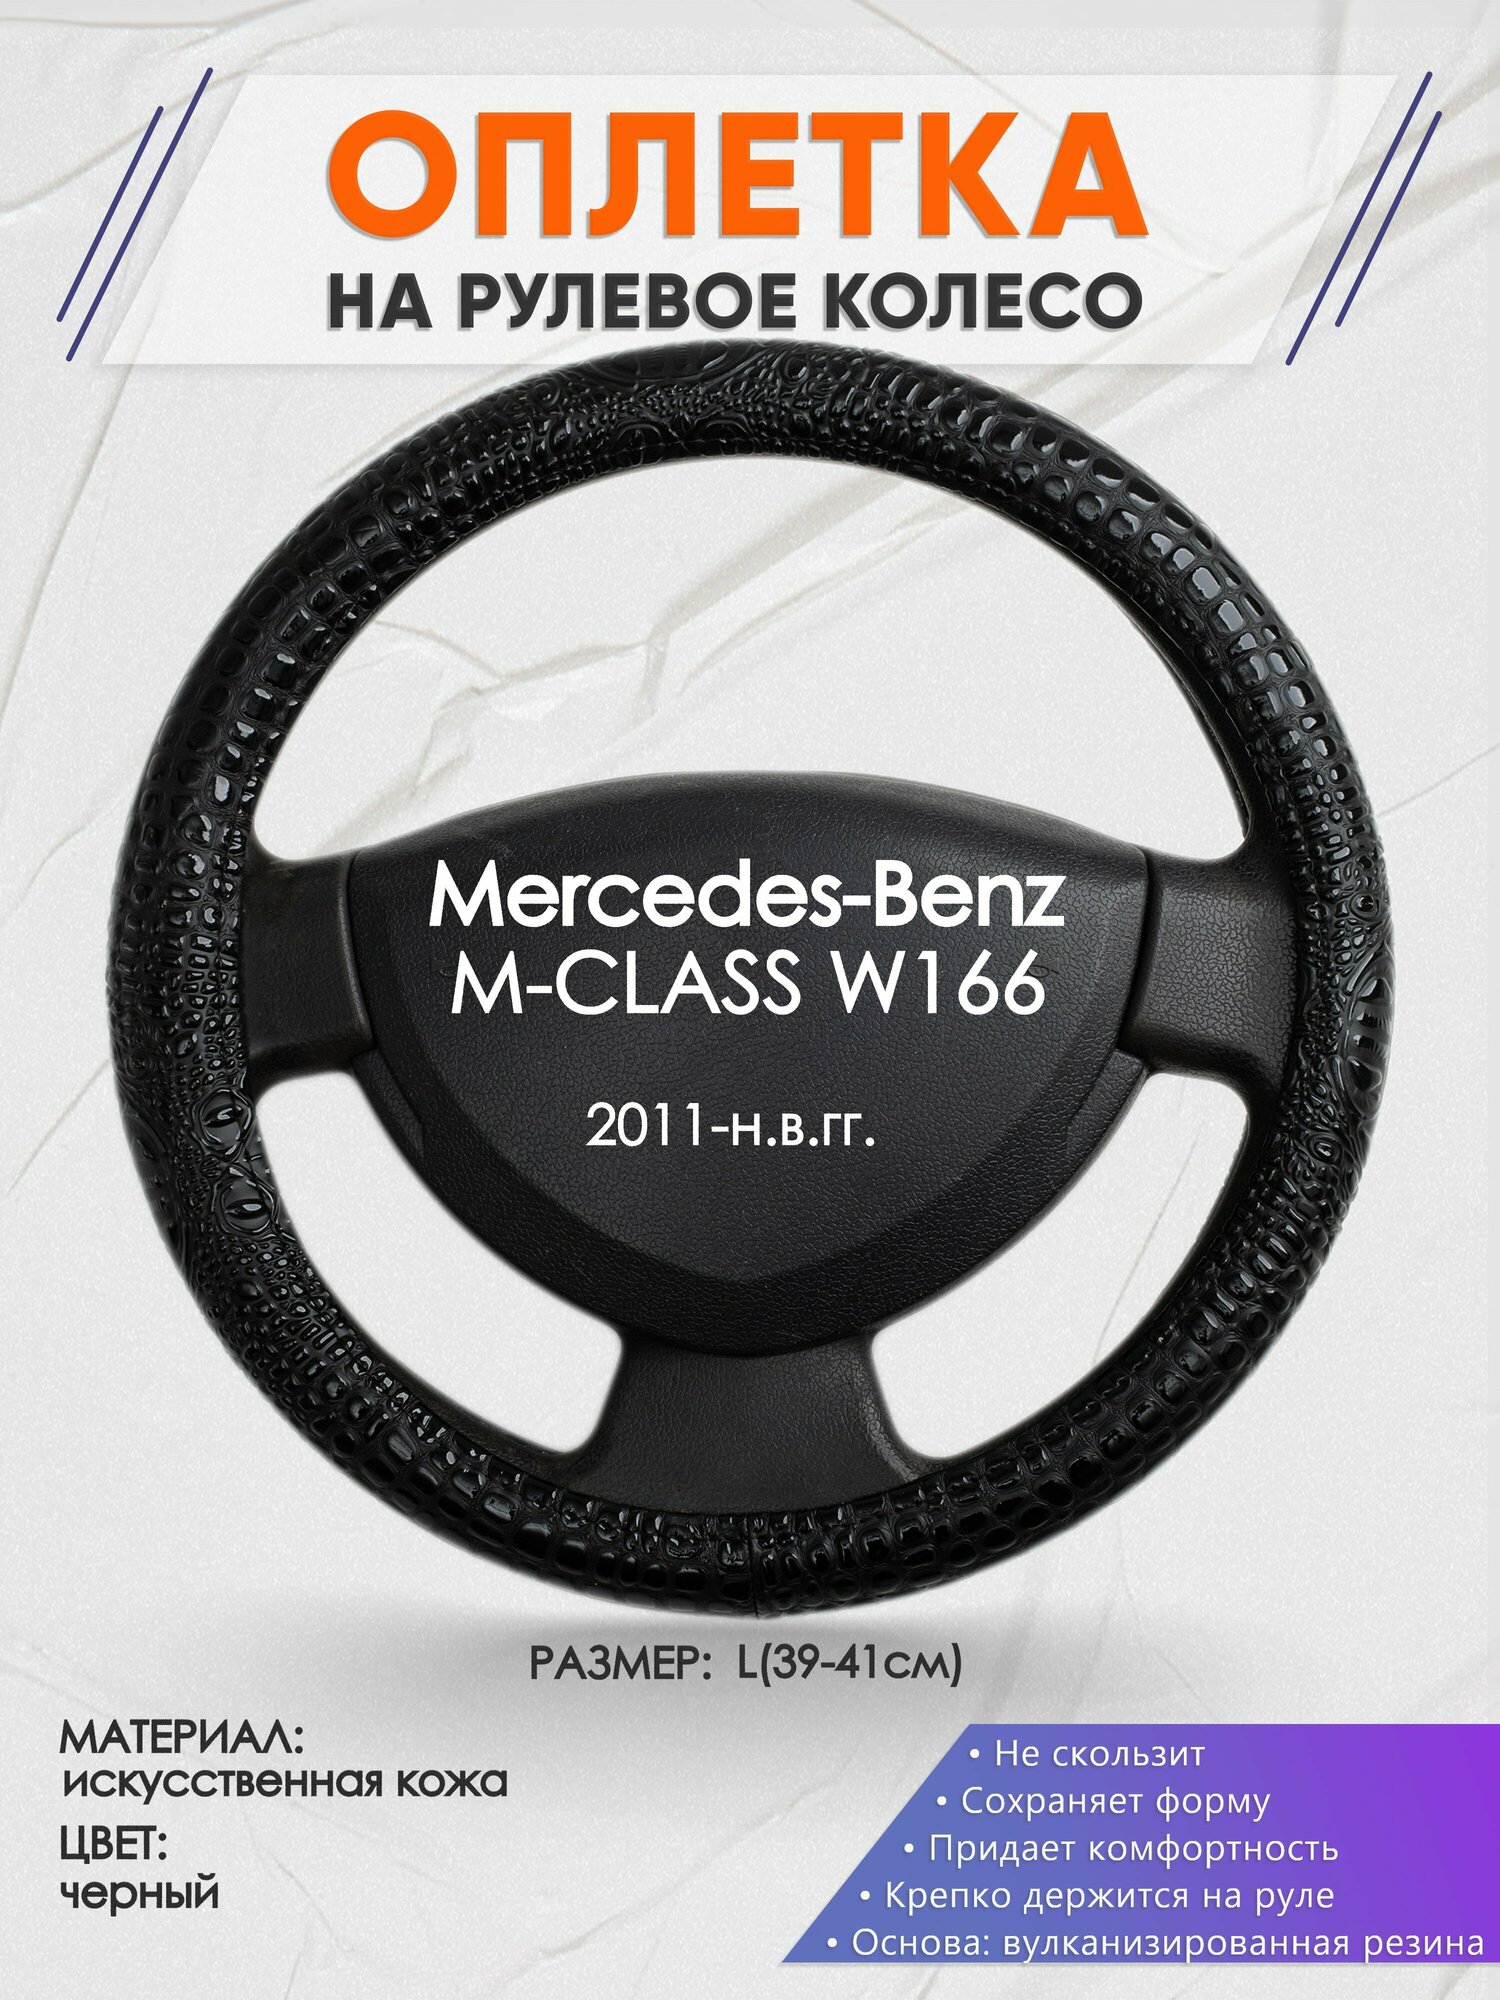 Оплетка на руль для Mercedes-Benz M-CLASS W166(Мерседес Бенц М Класс) 2011-н. в, L(39-41см), Искусственная кожа 79